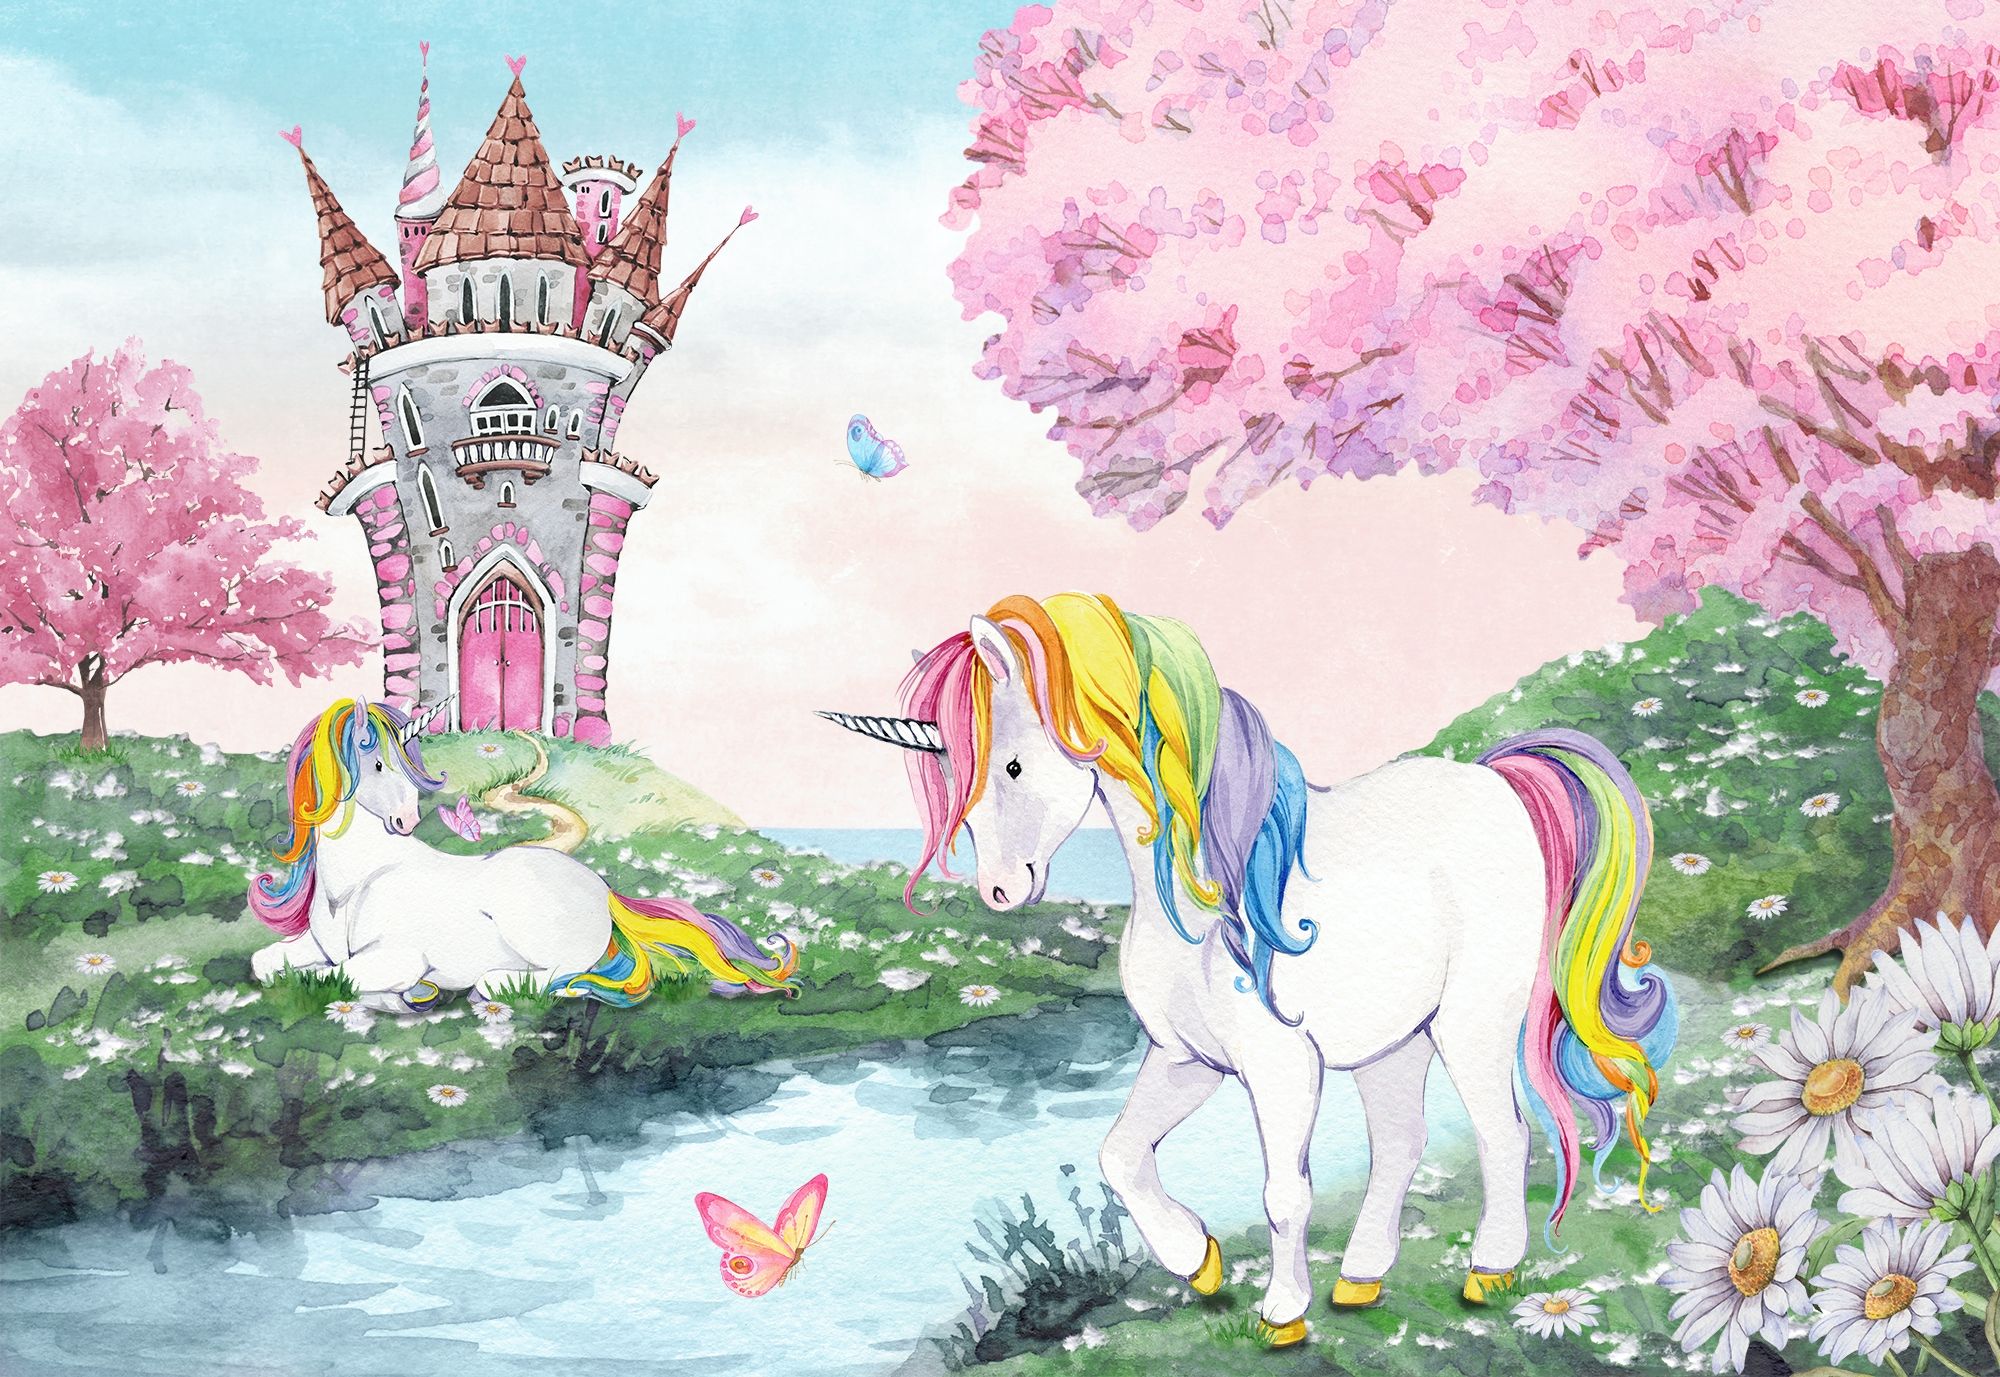 Kids Girls Unicorn with Pink Florals Wallpaper Mural • Wallmur®